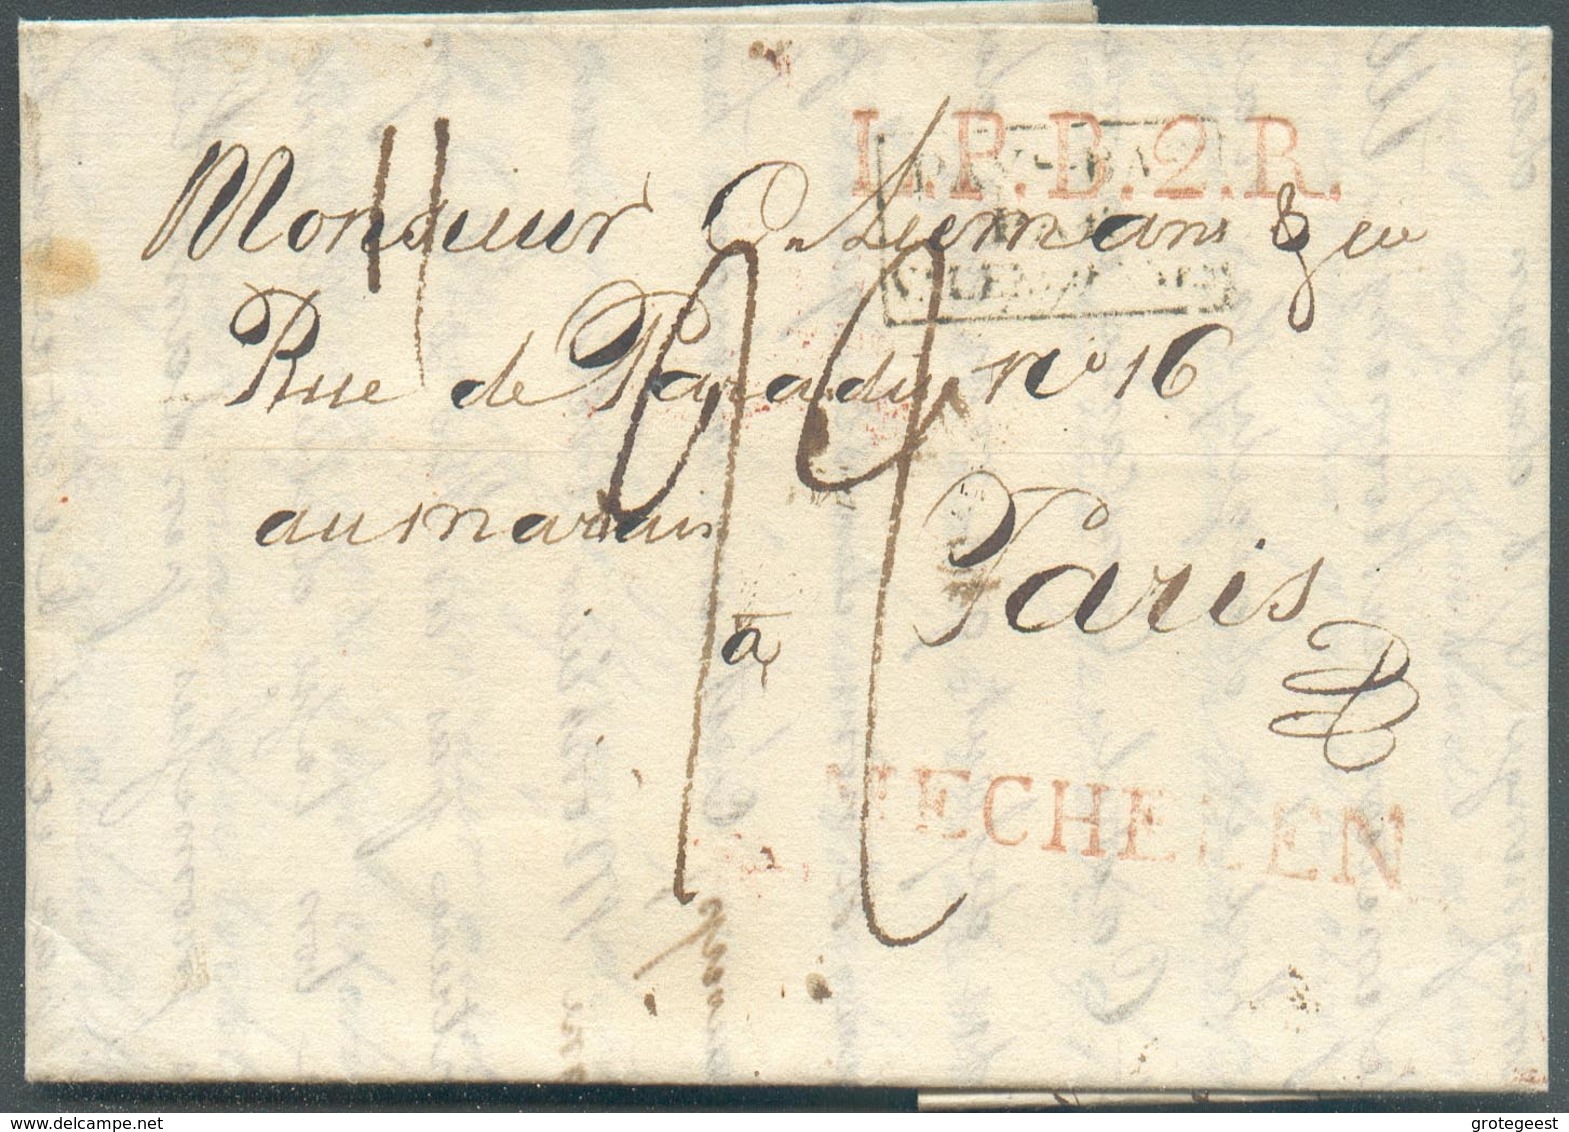 LAC (griffe Au Tampon) MECHELEN Le 3/1/1821 + Griffe L.P.B.2.R. + PAYS-BAS PAR VALENCIENNES Vers Paris; Port Dû '22'. - - 1815-1830 (Holländische Periode)